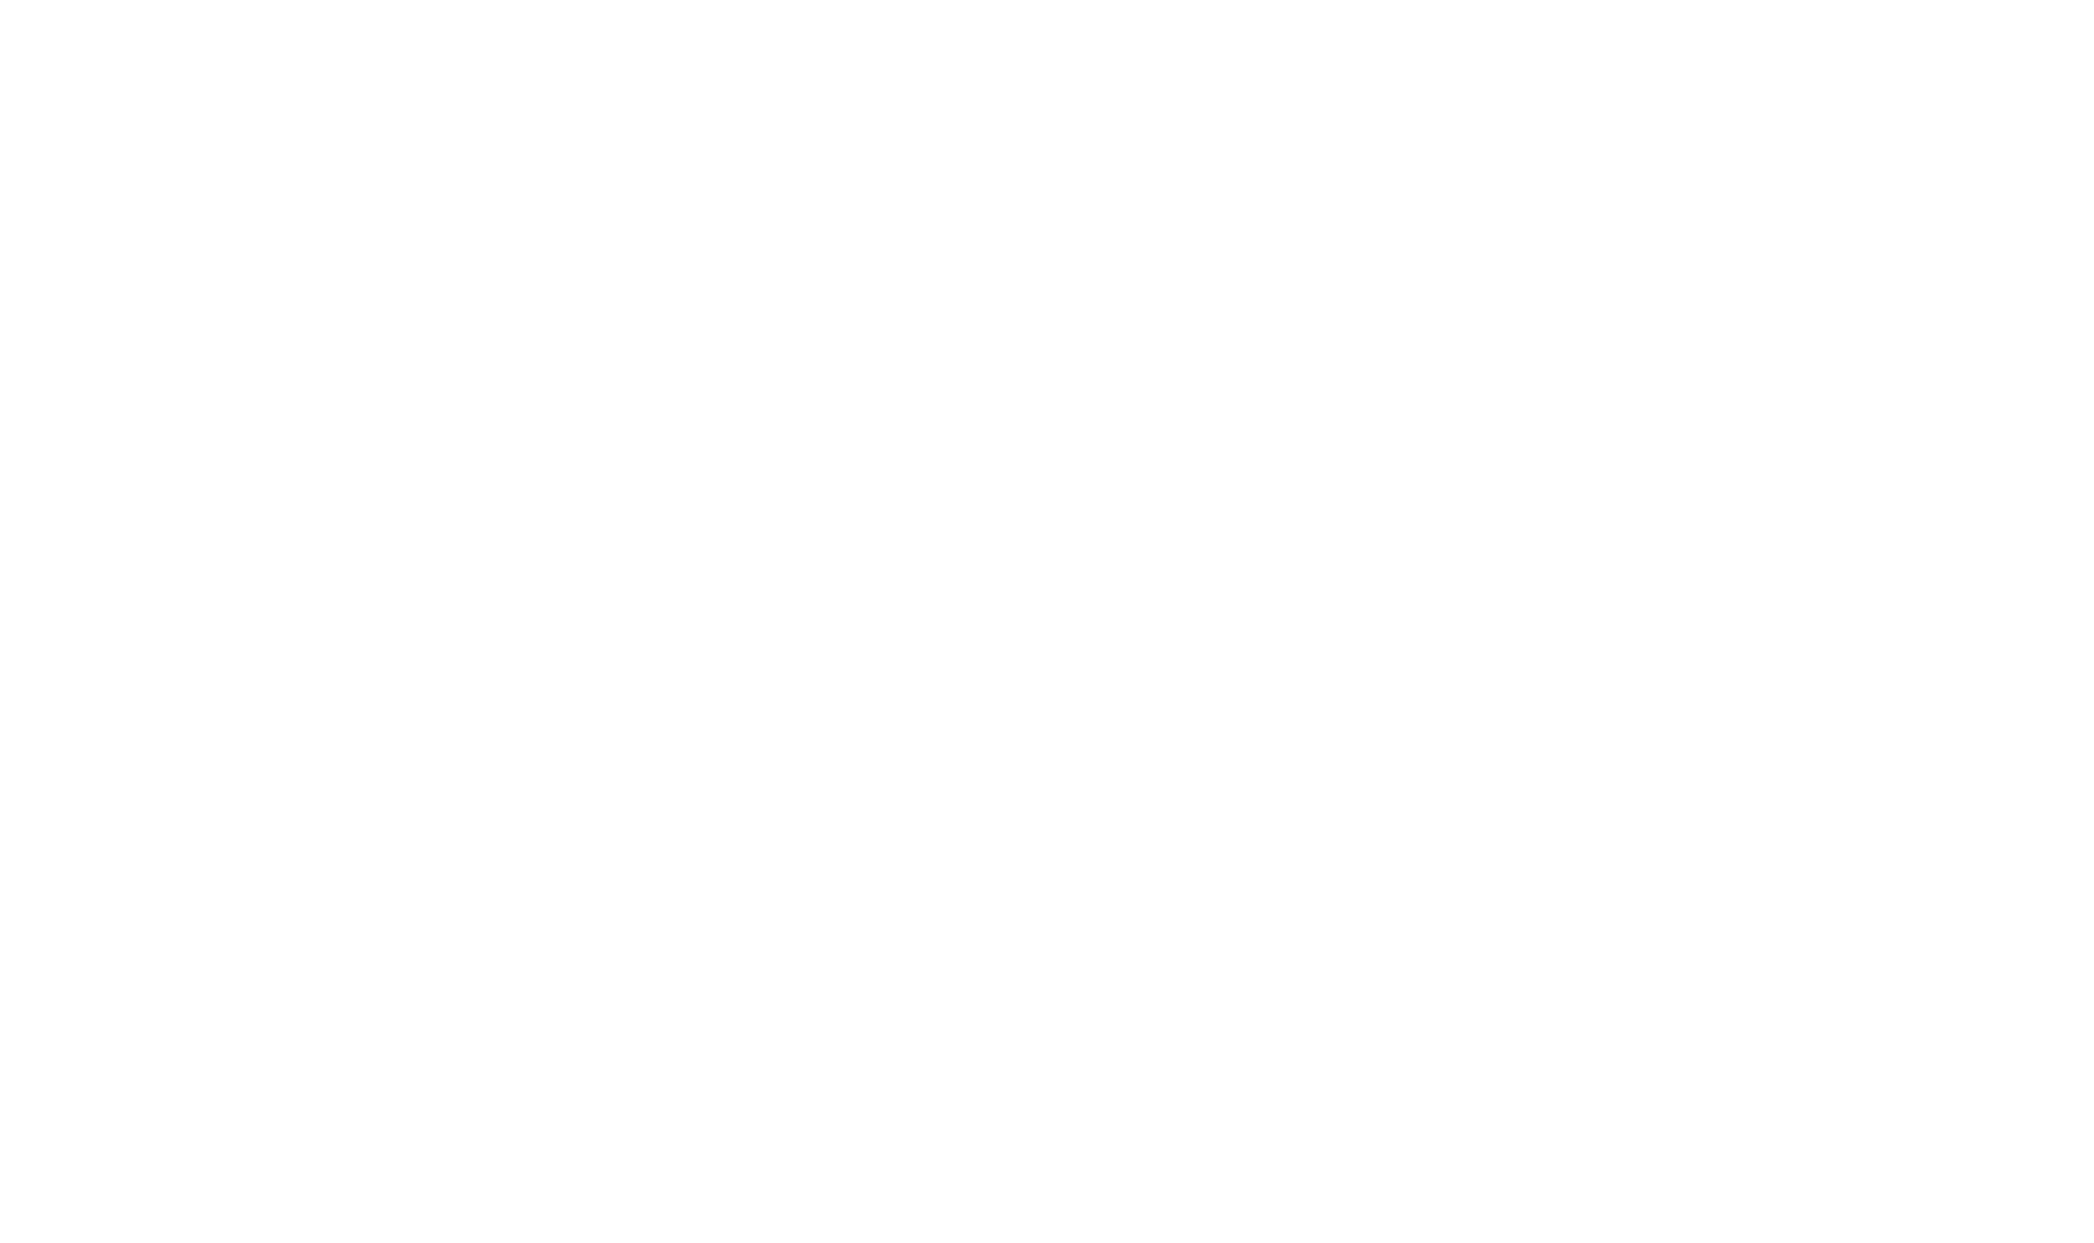 East Coast Implant Institute